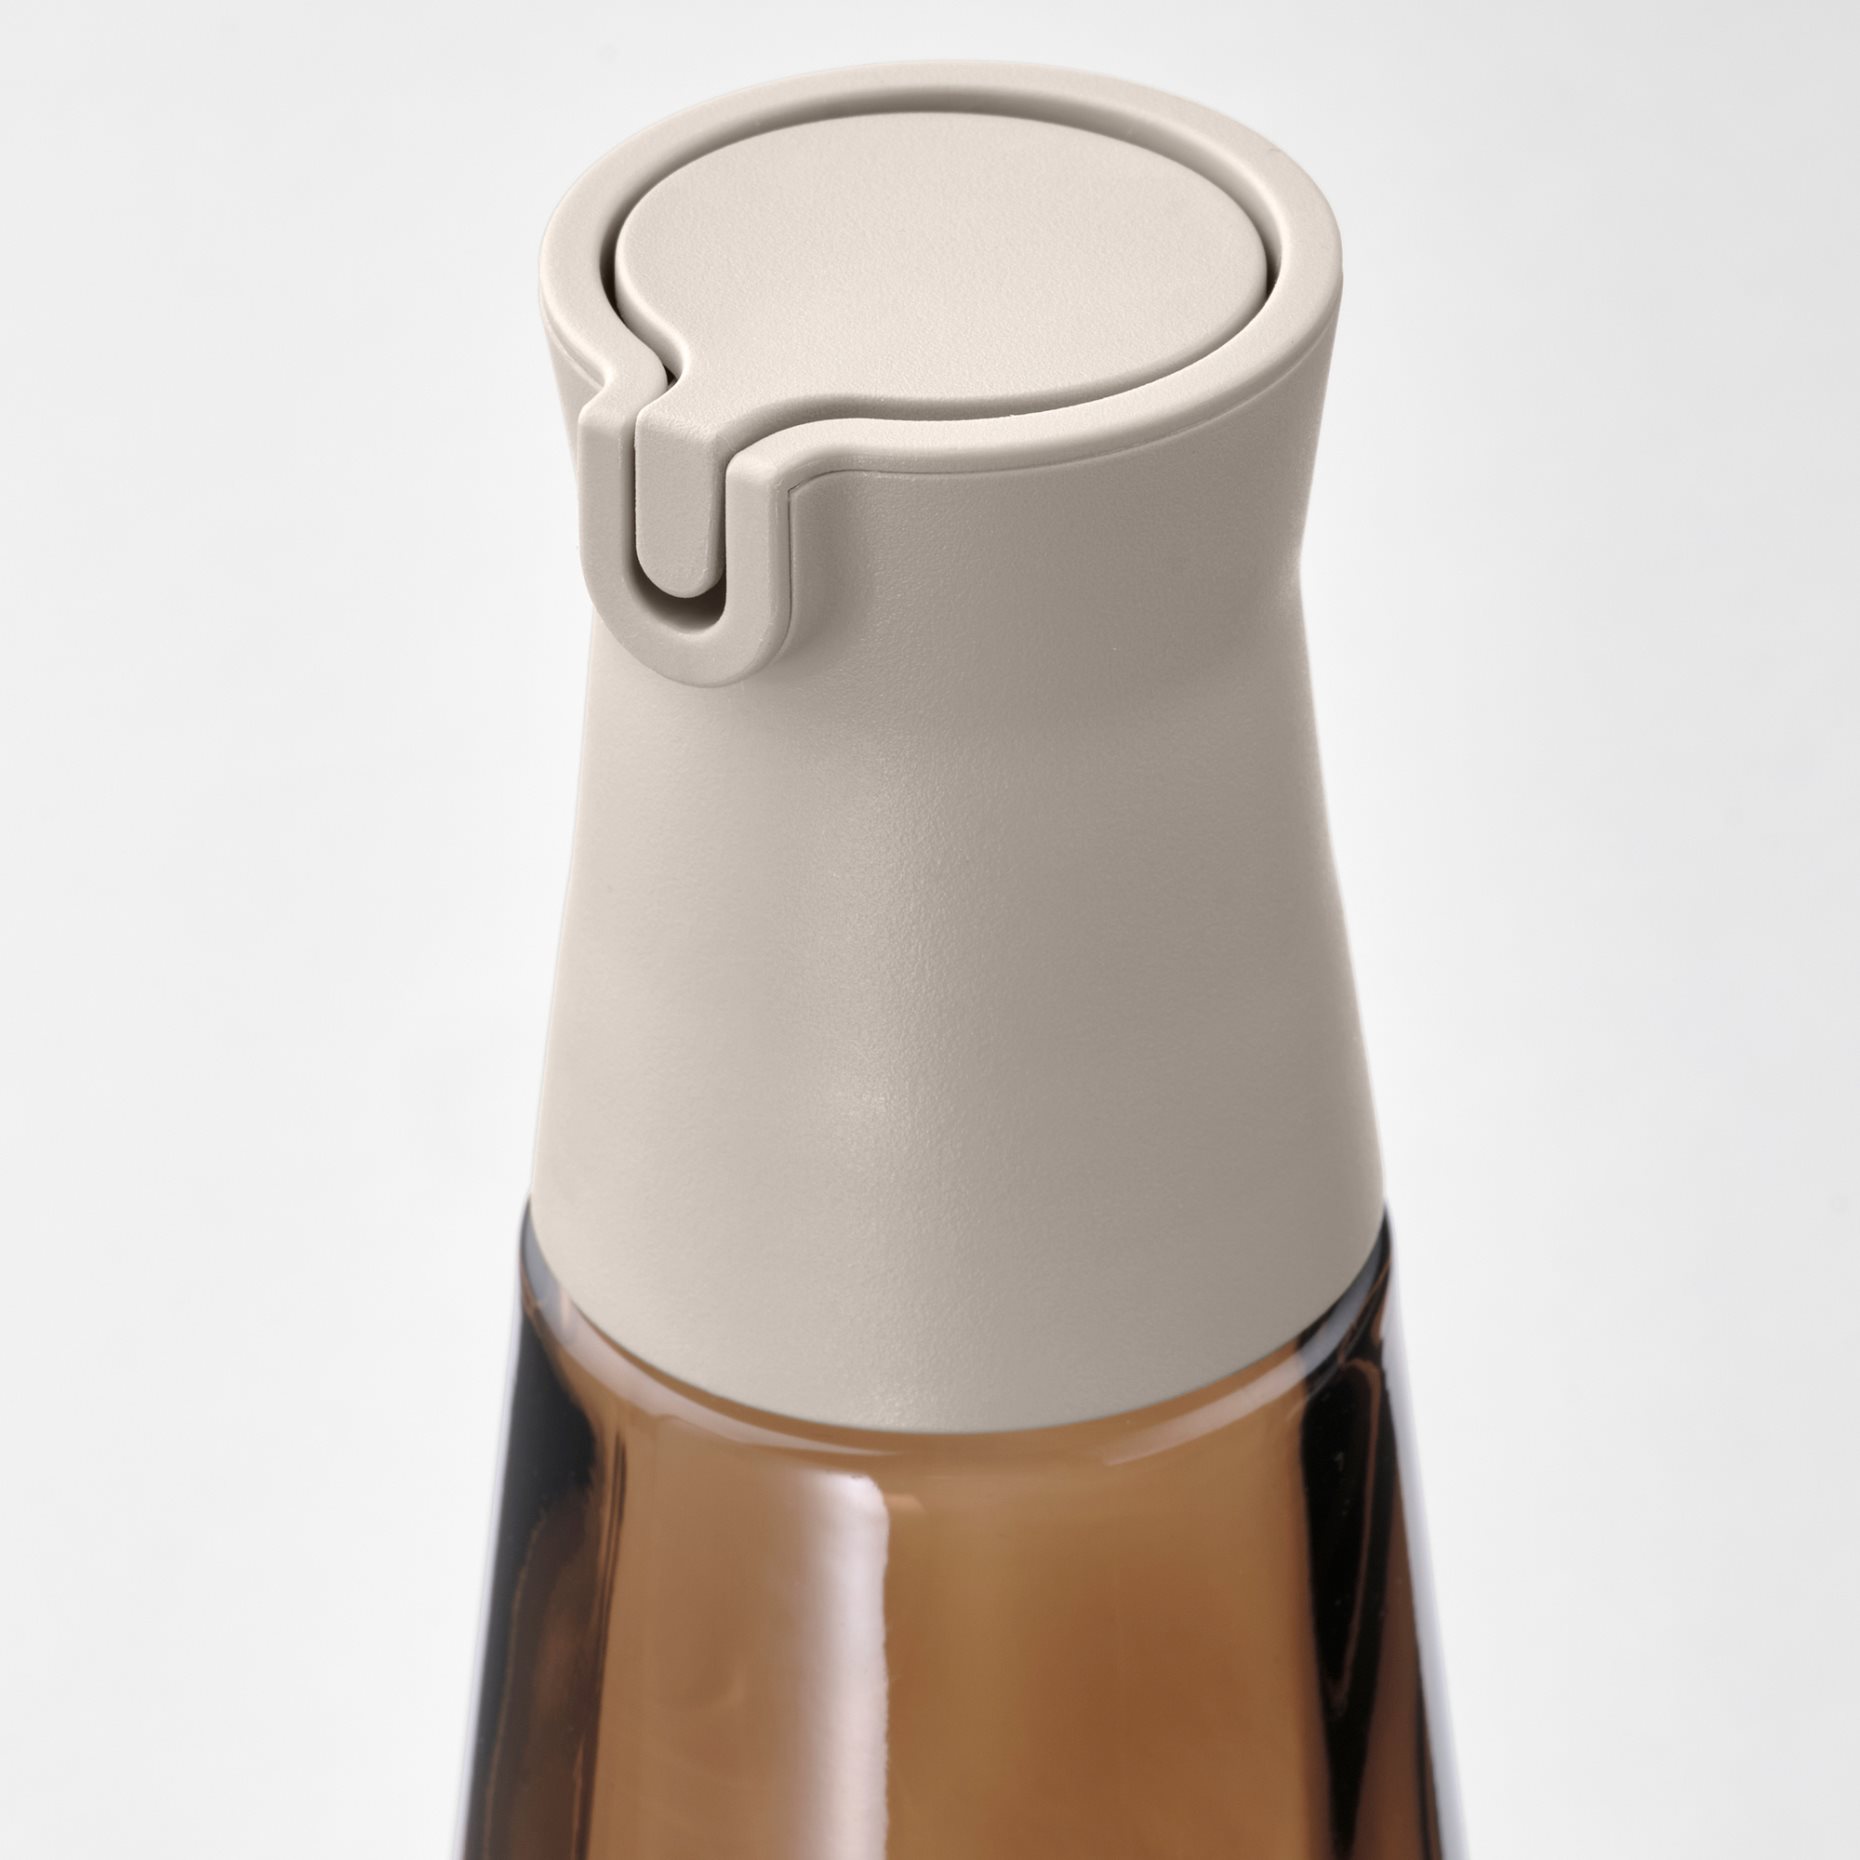 HALVTOM, bottle with pour spout/glass, 19 cm, 005.234.62